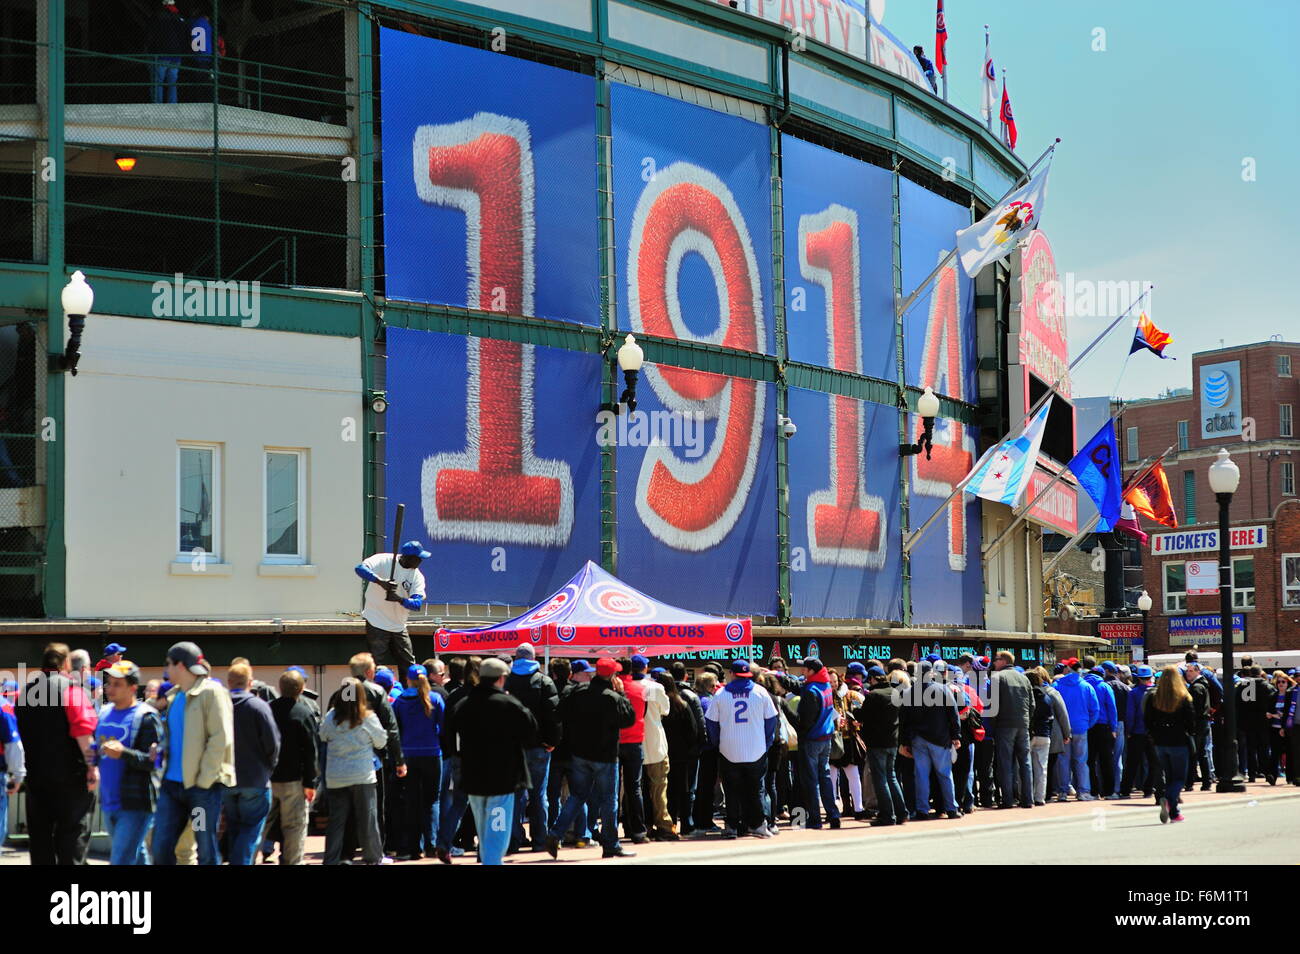 Ligne des fans en grand nombre attendent pour entrer l'entrée principale à Wrigley Field, le stade des Chicago Cubs. Chicago, Illinois, USA. Banque D'Images